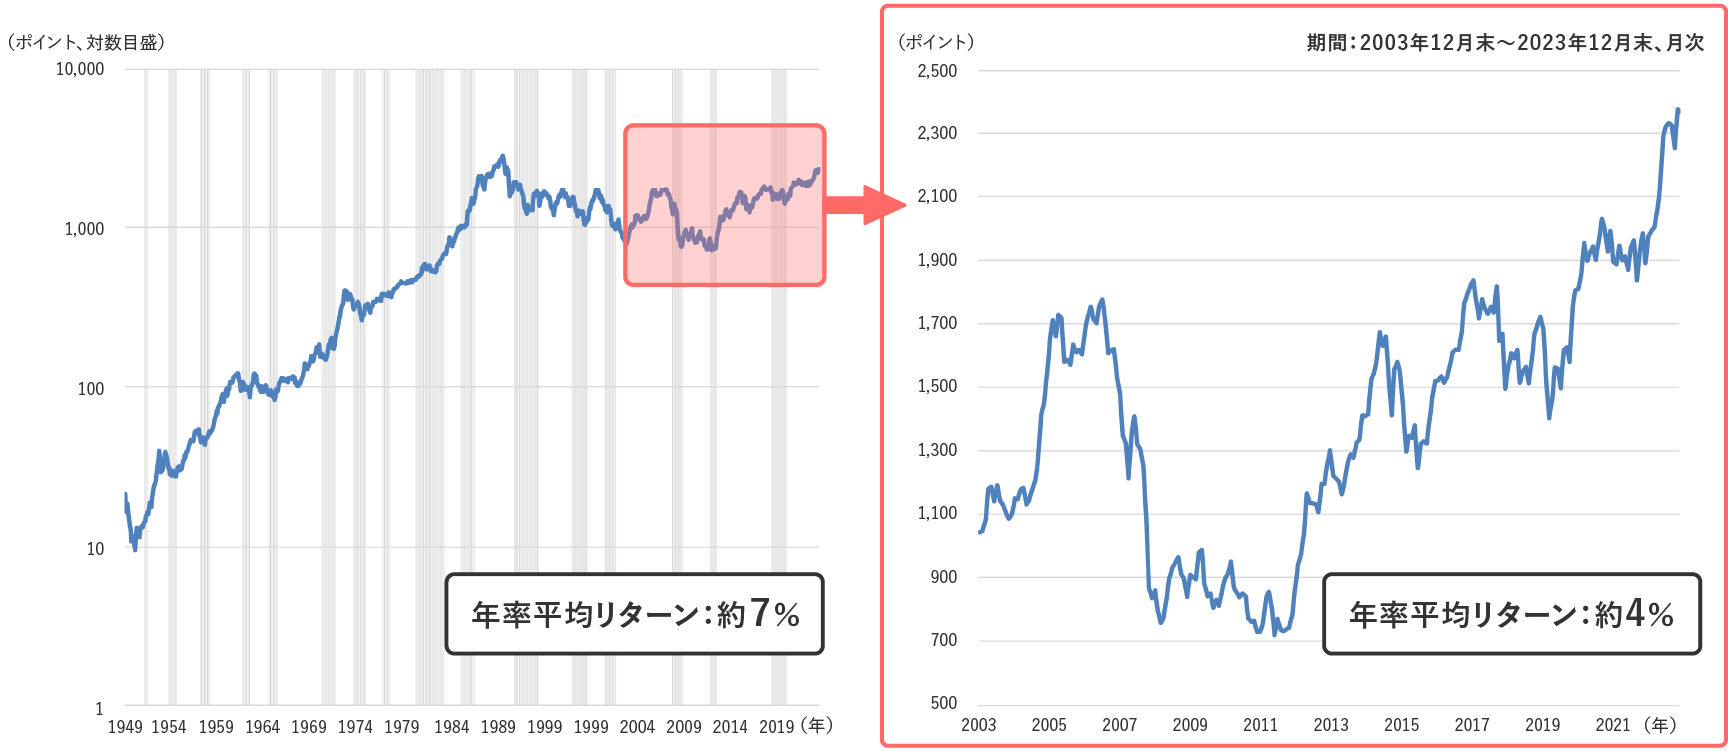 日本株式（TOPIX）の推移の図